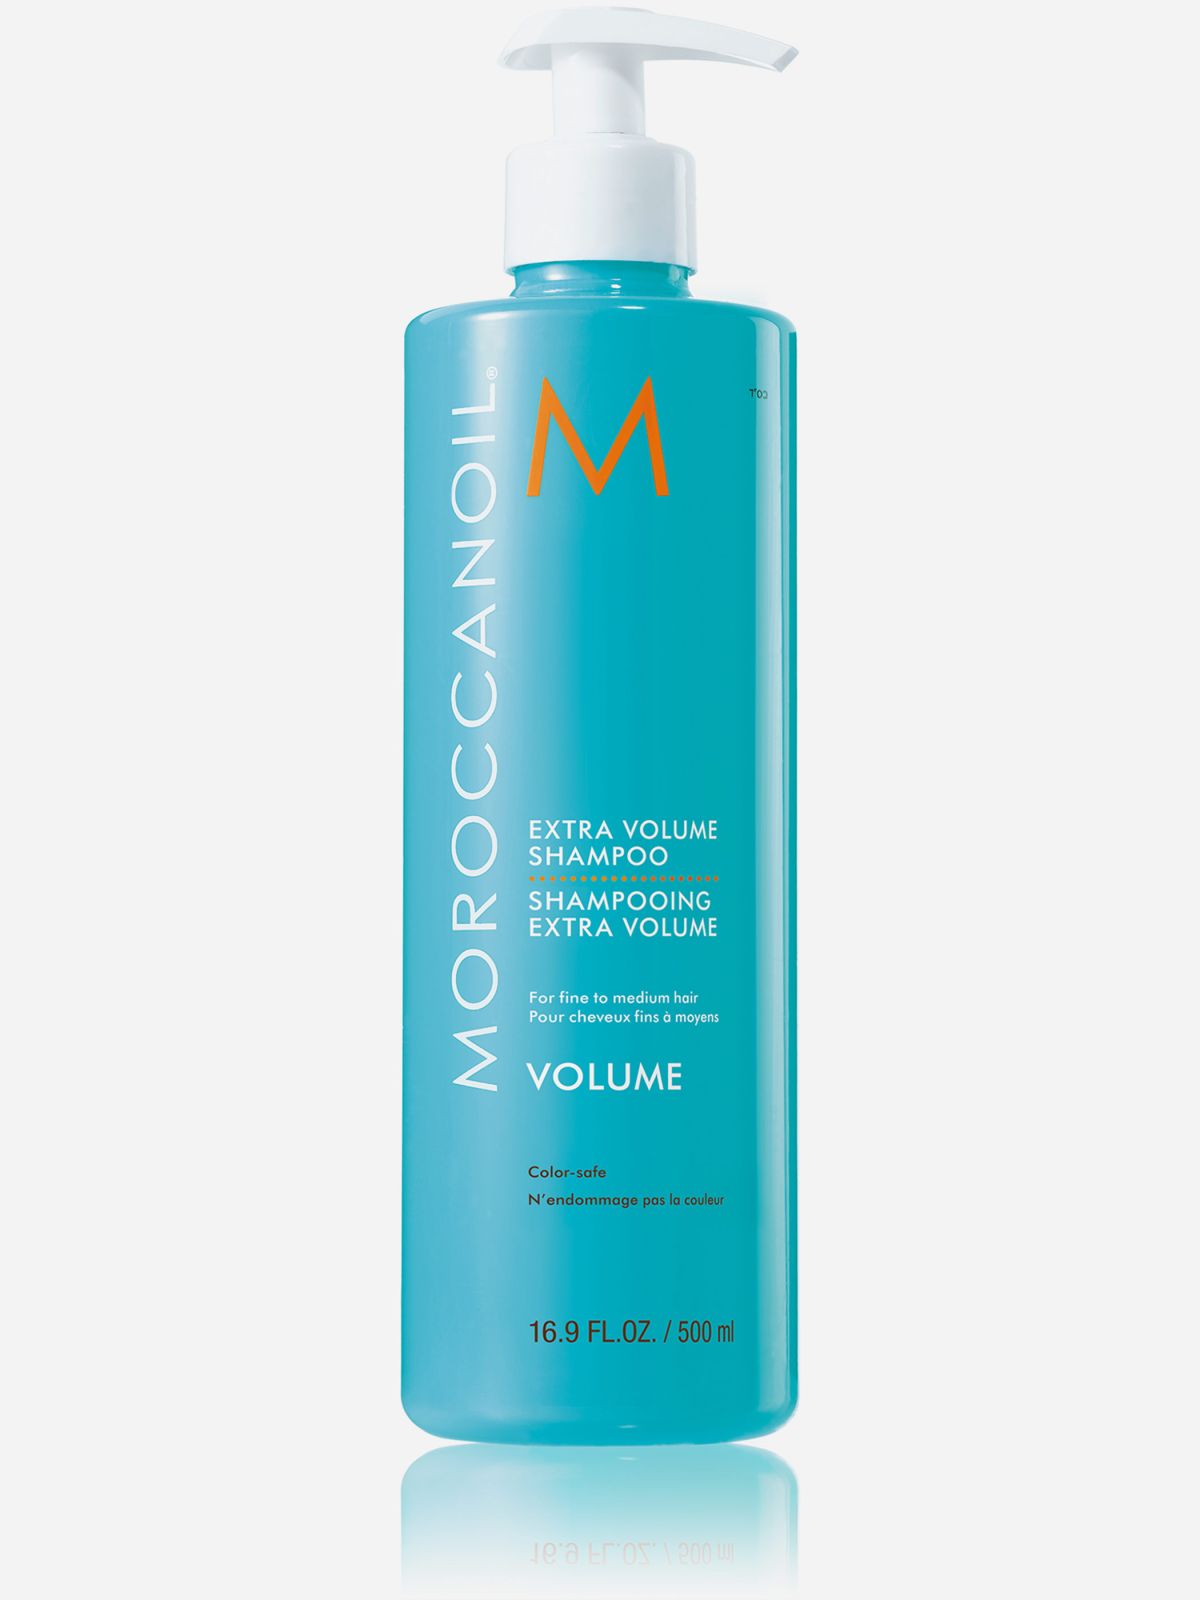  שמפו מעניק נפח Extra volume shampoo של MOROCCANOIL